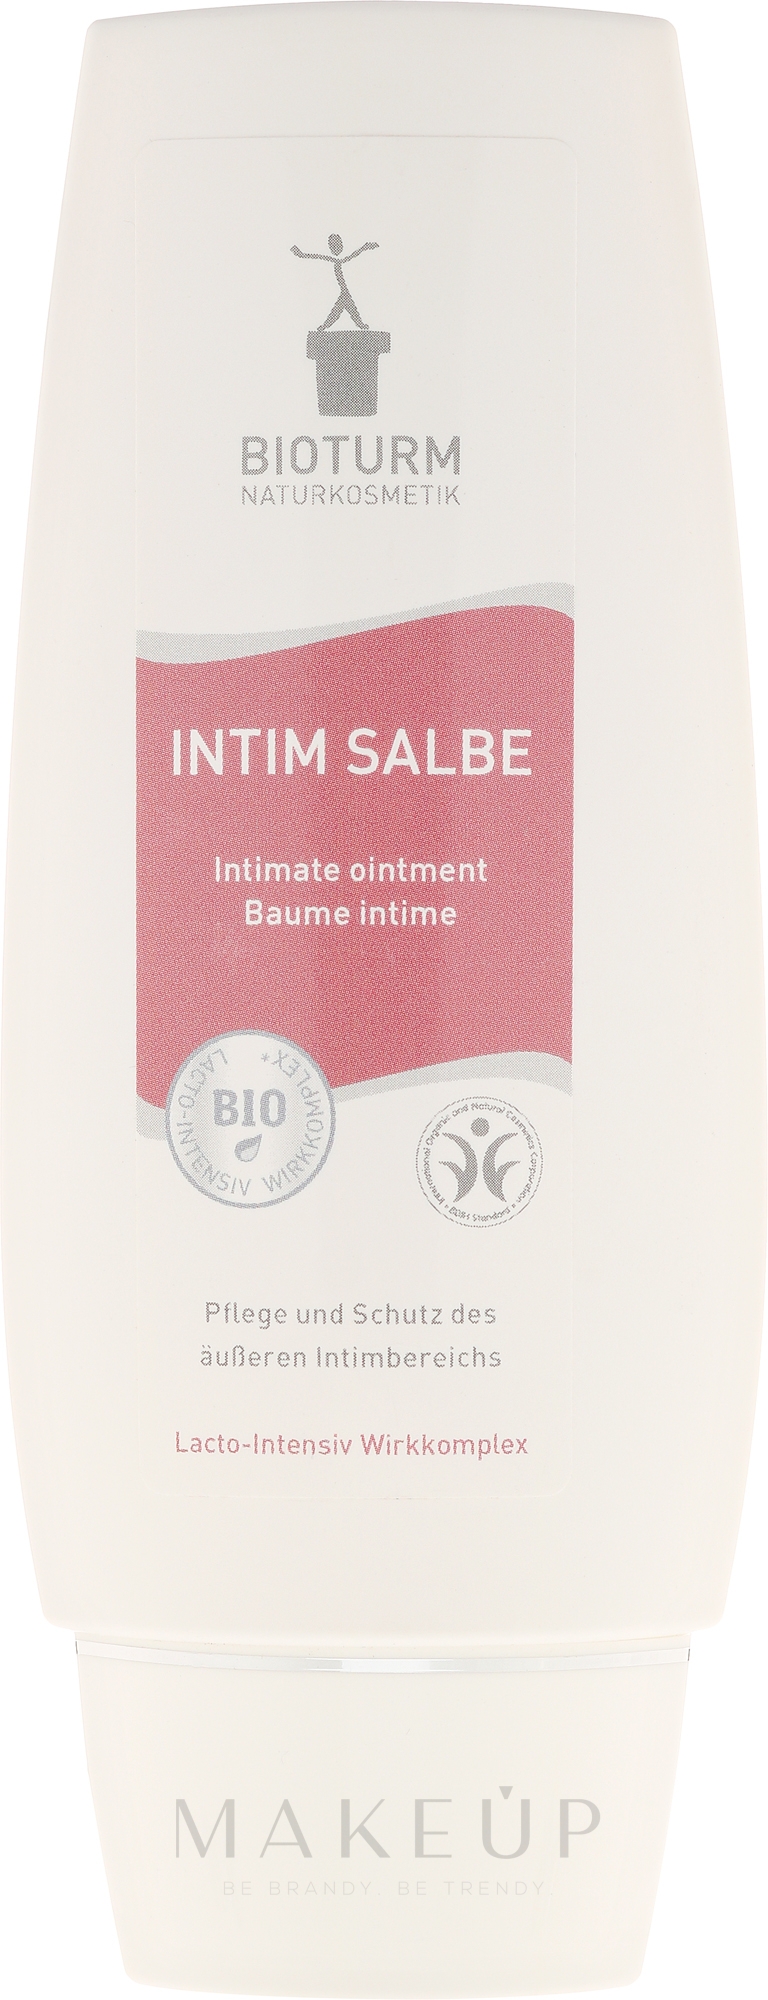 Regenerierende Intimpflege-Salbe mit Kamille und Ringelblume - Bioturm Intim Salbe No.27 — Bild 75 ml